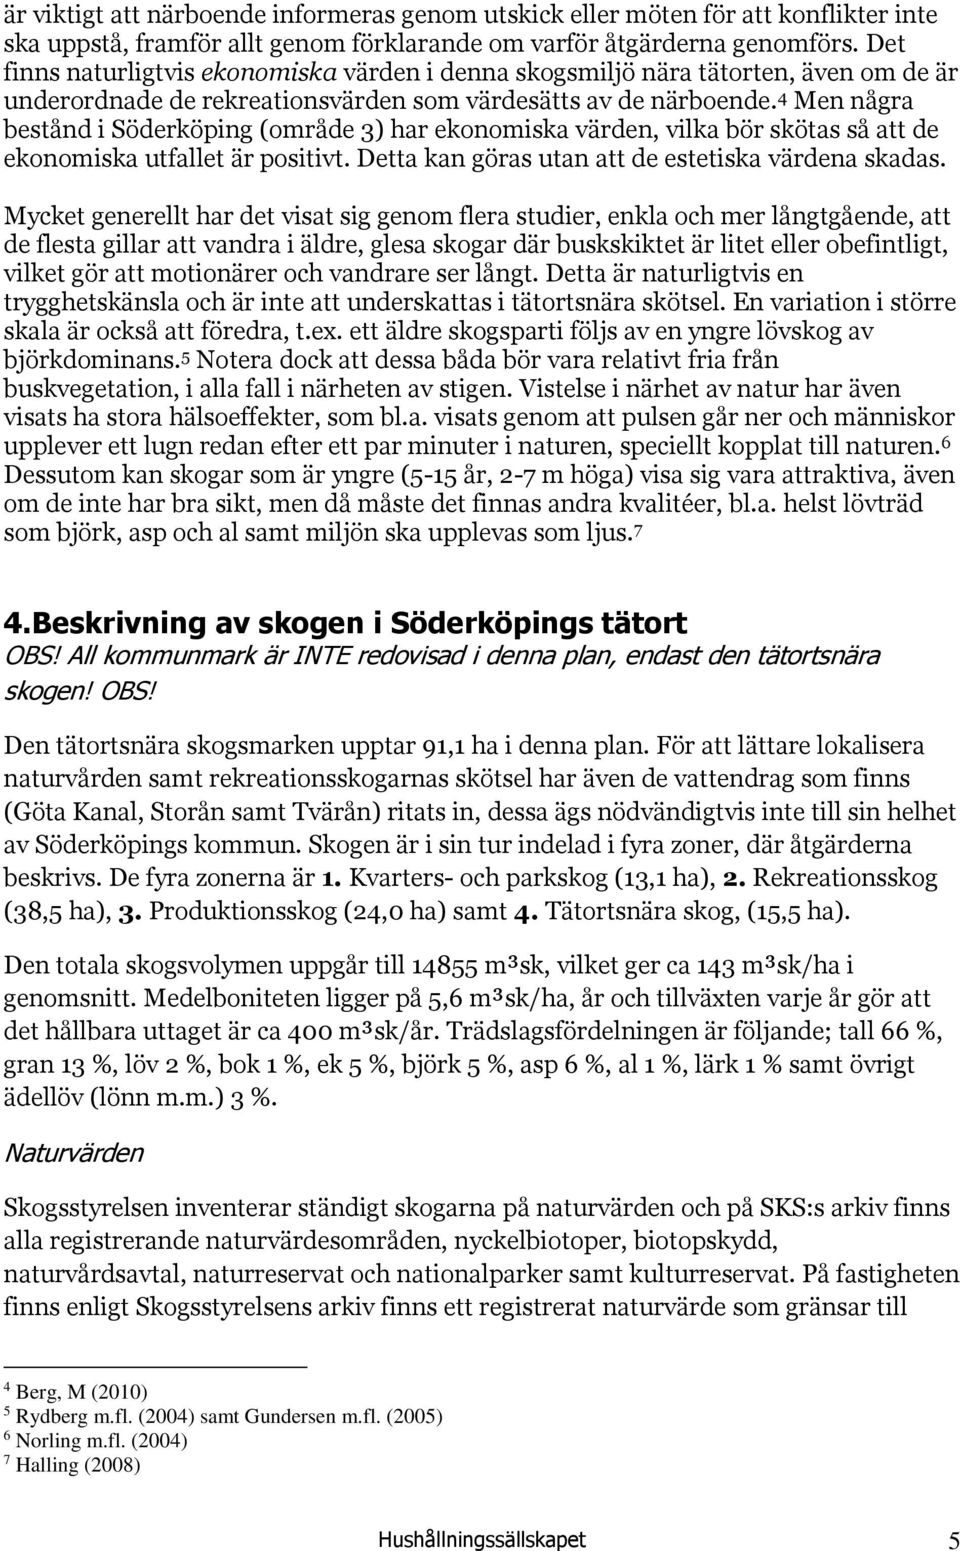 4 Men några bestånd i Söderköping (område 3) har ekonomiska värden, vilka bör skötas så att de ekonomiska utfallet är positivt. Detta kan göras utan att de estetiska värdena skadas.